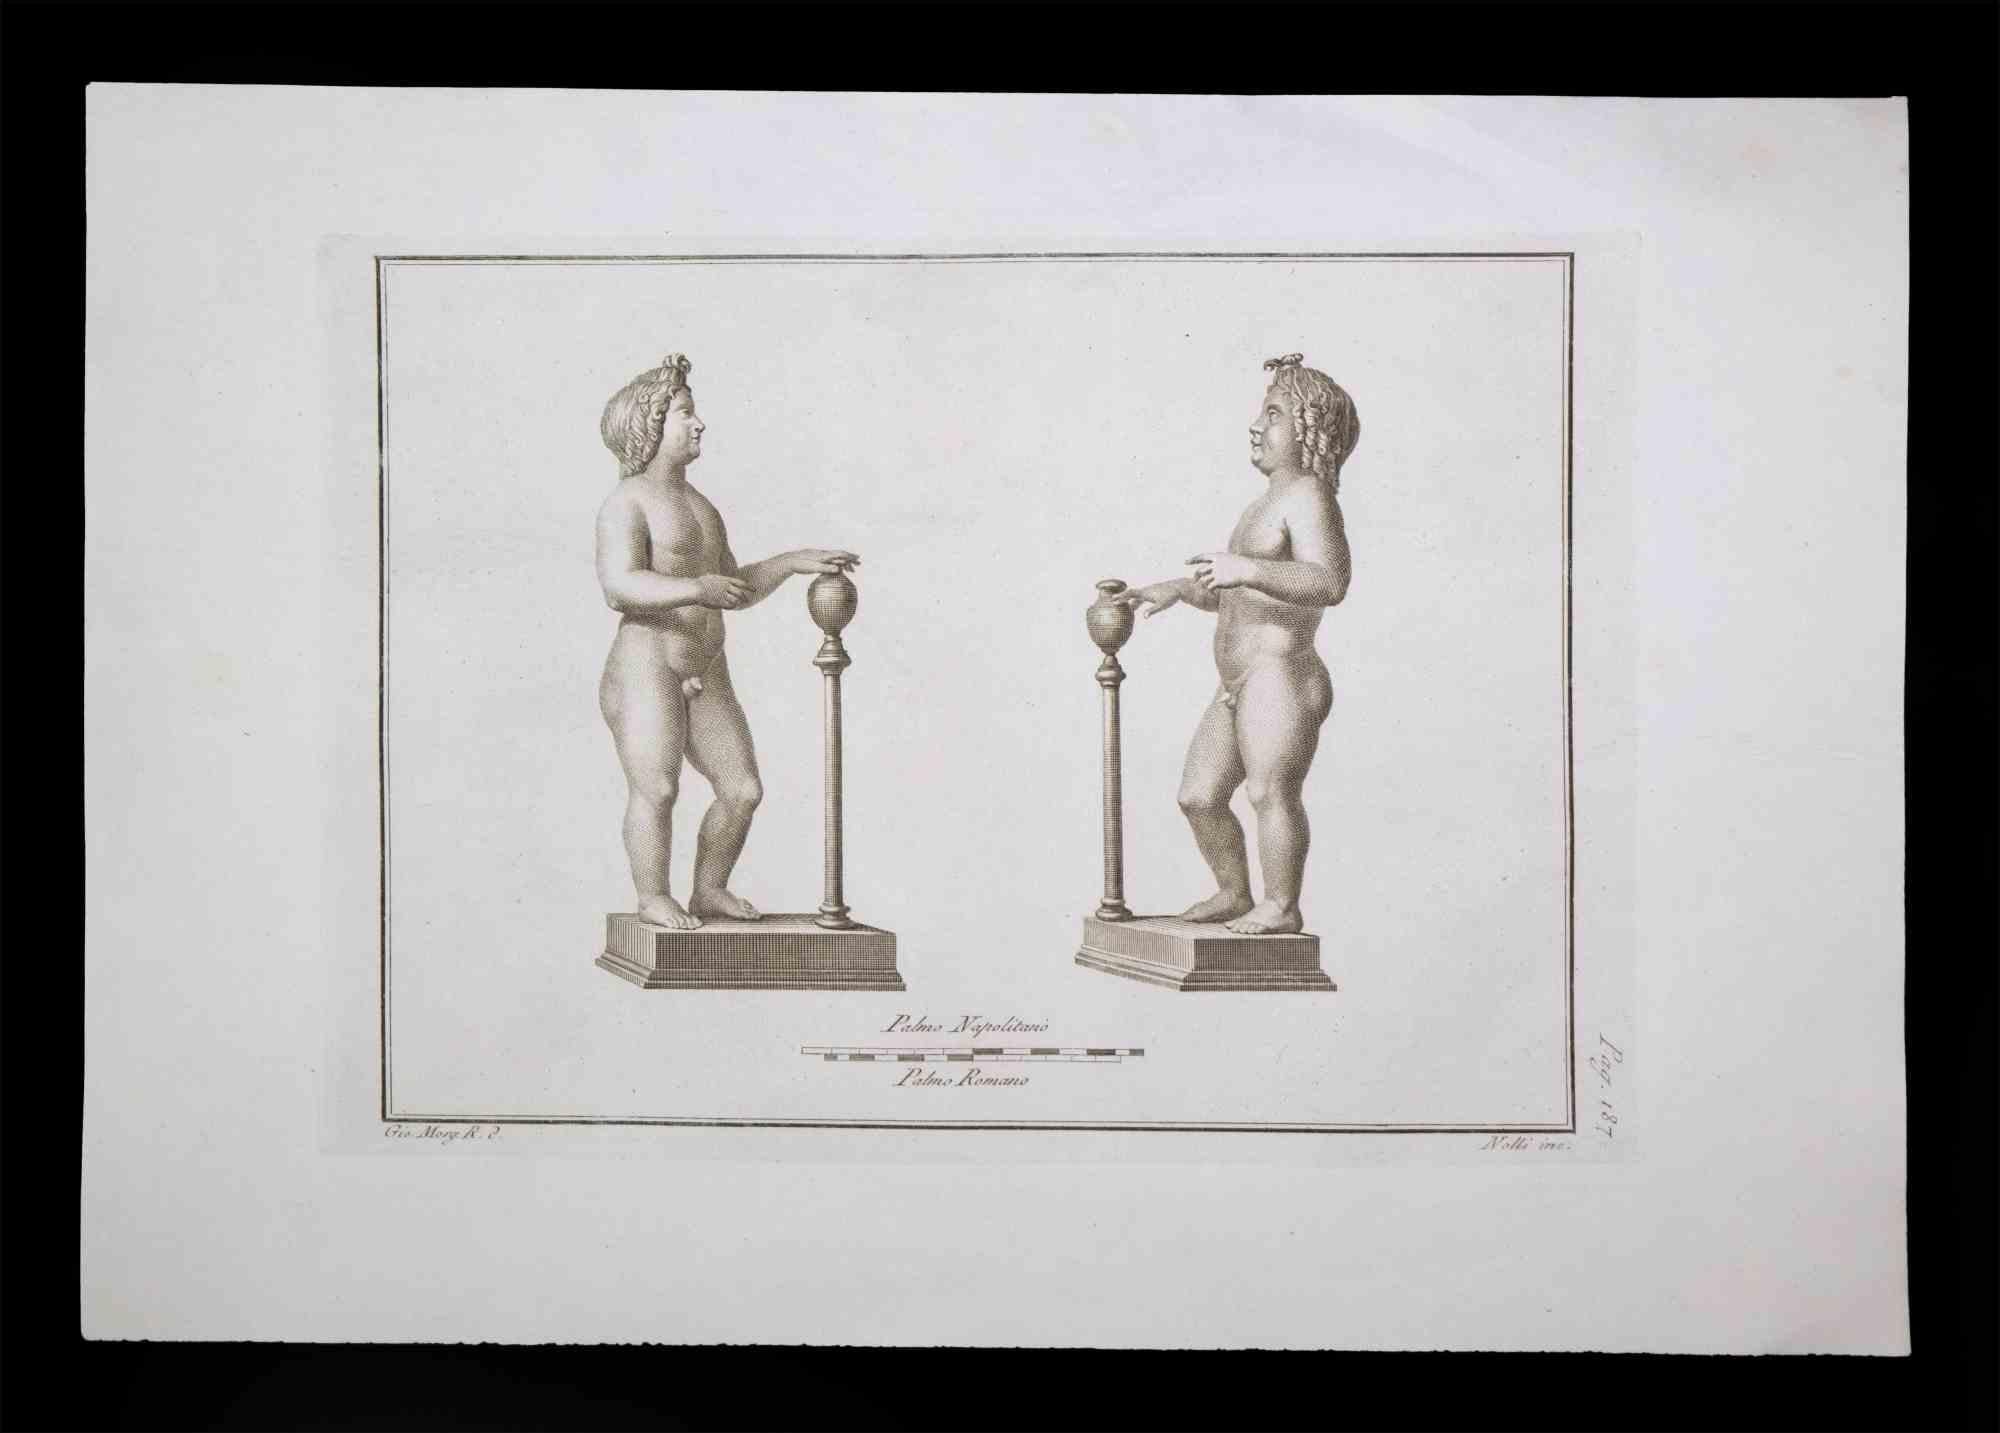 Statue romaine antique, de la série "Antiquités d'Herculanum", est une gravure originale sur papier réalisée par Carlo Nolli au 18ème siècle.

Signé sur la plaque, en bas à droite.

Bonnes conditions avec de légères pliures.

La gravure appartient à